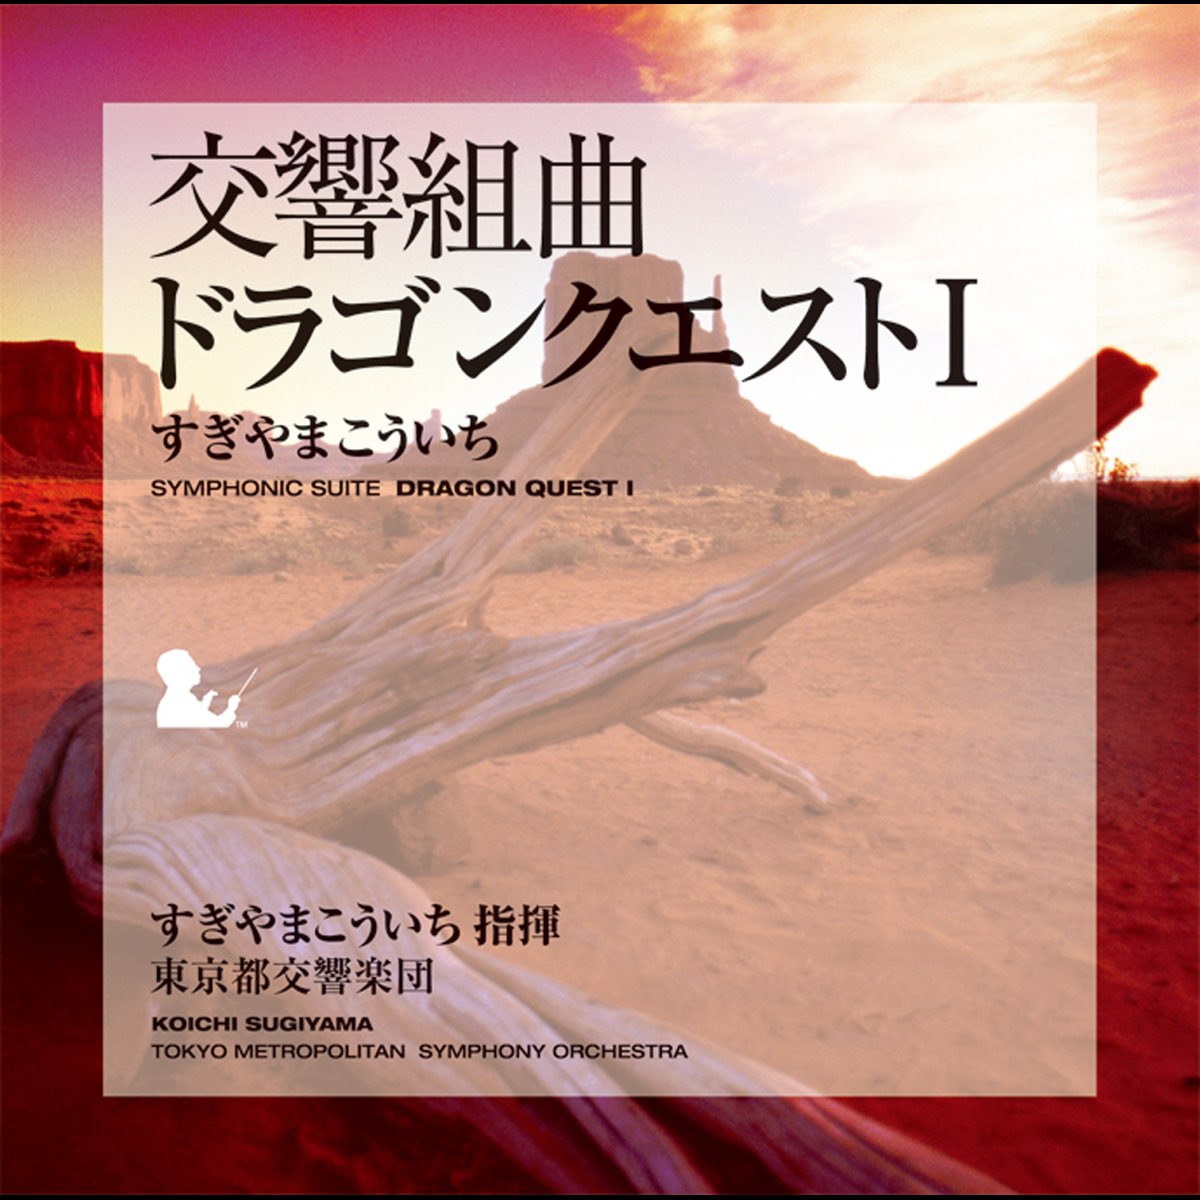 交響組曲「ドラゴンクエストI」 - すぎやまこういち指揮東京都交響楽団 